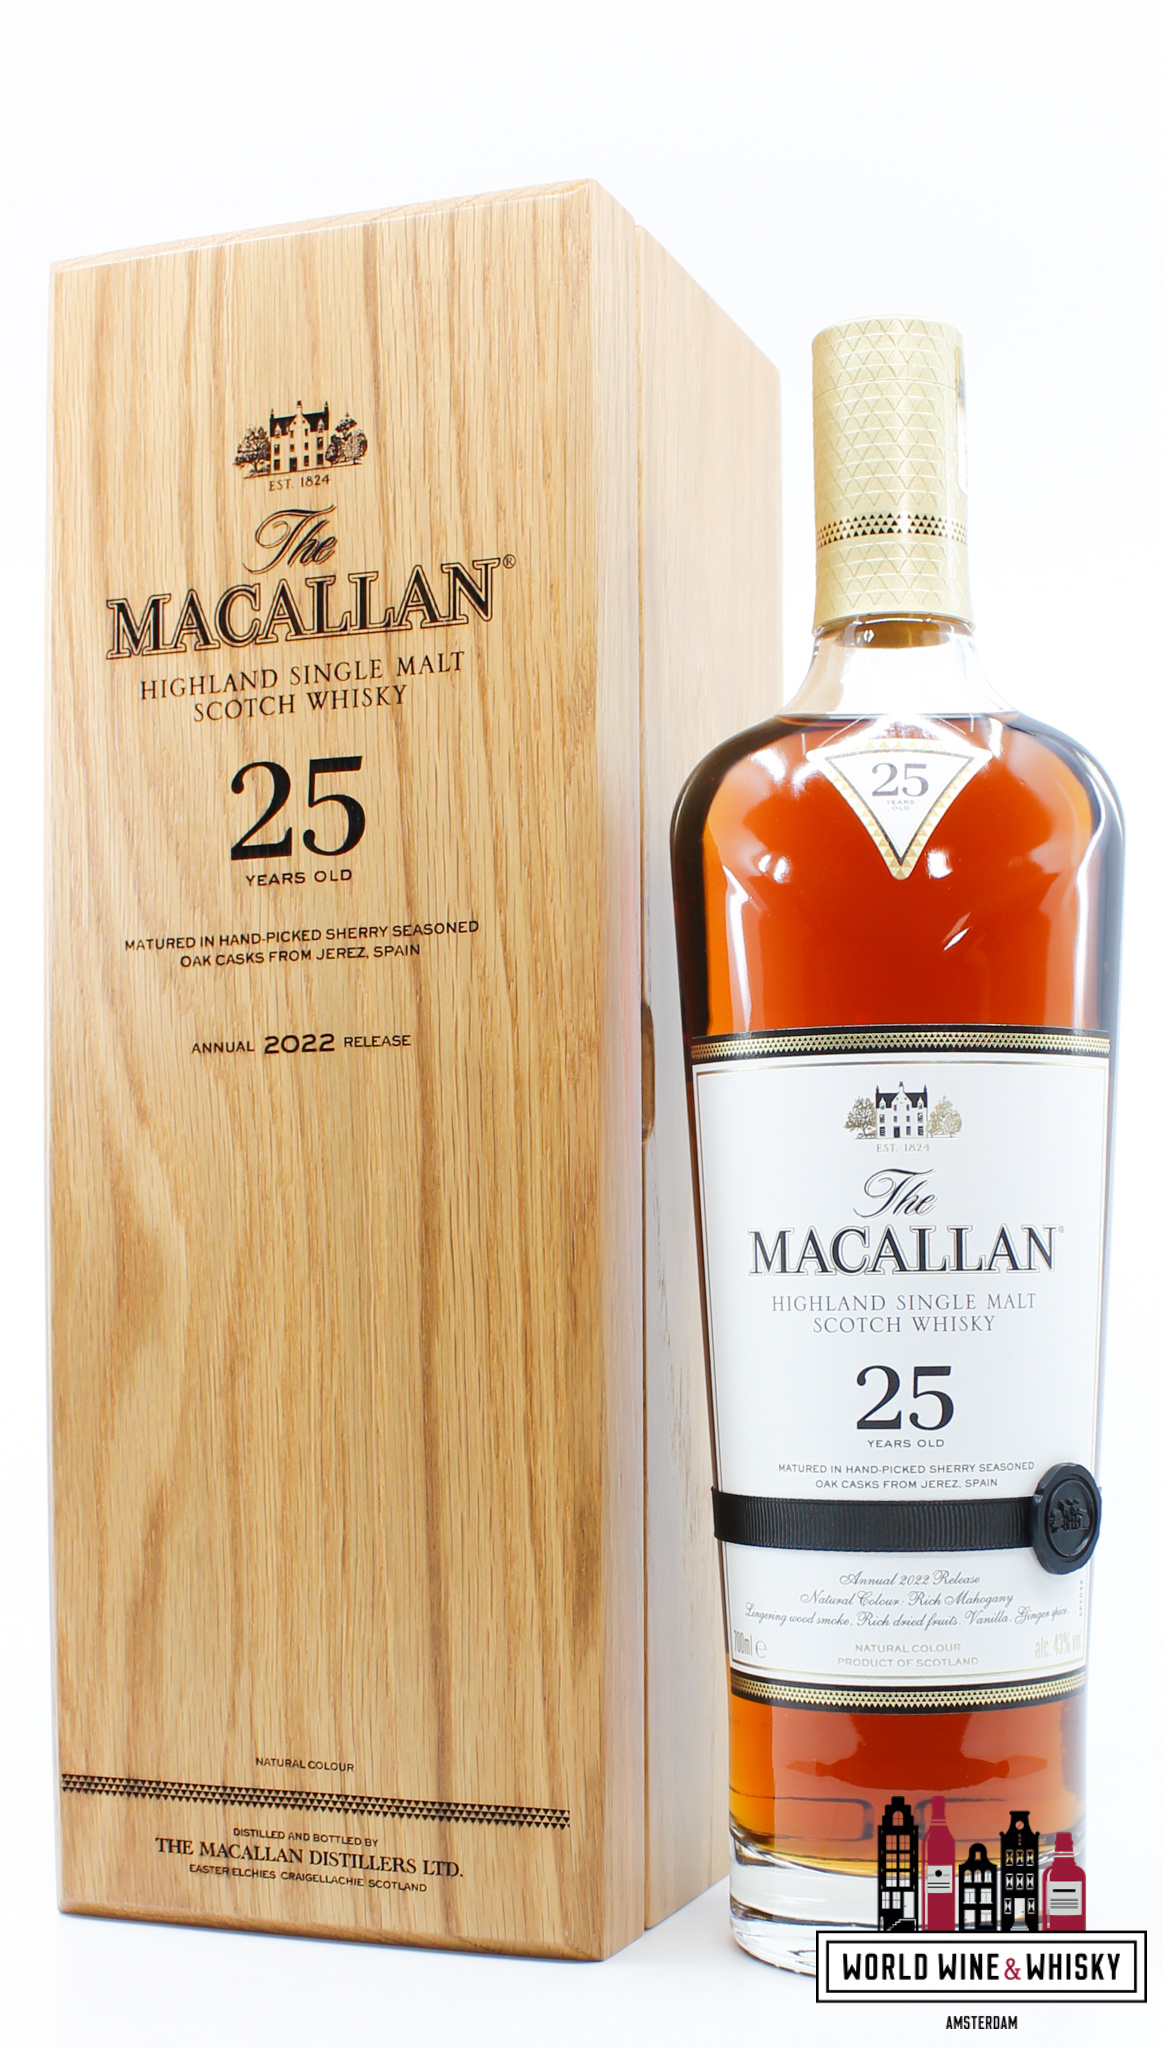 Macallan Macallan 25 Years Old 2022 - Sherry Oak Casks - Annual 2022 Release 43% (in luxury wooden case)